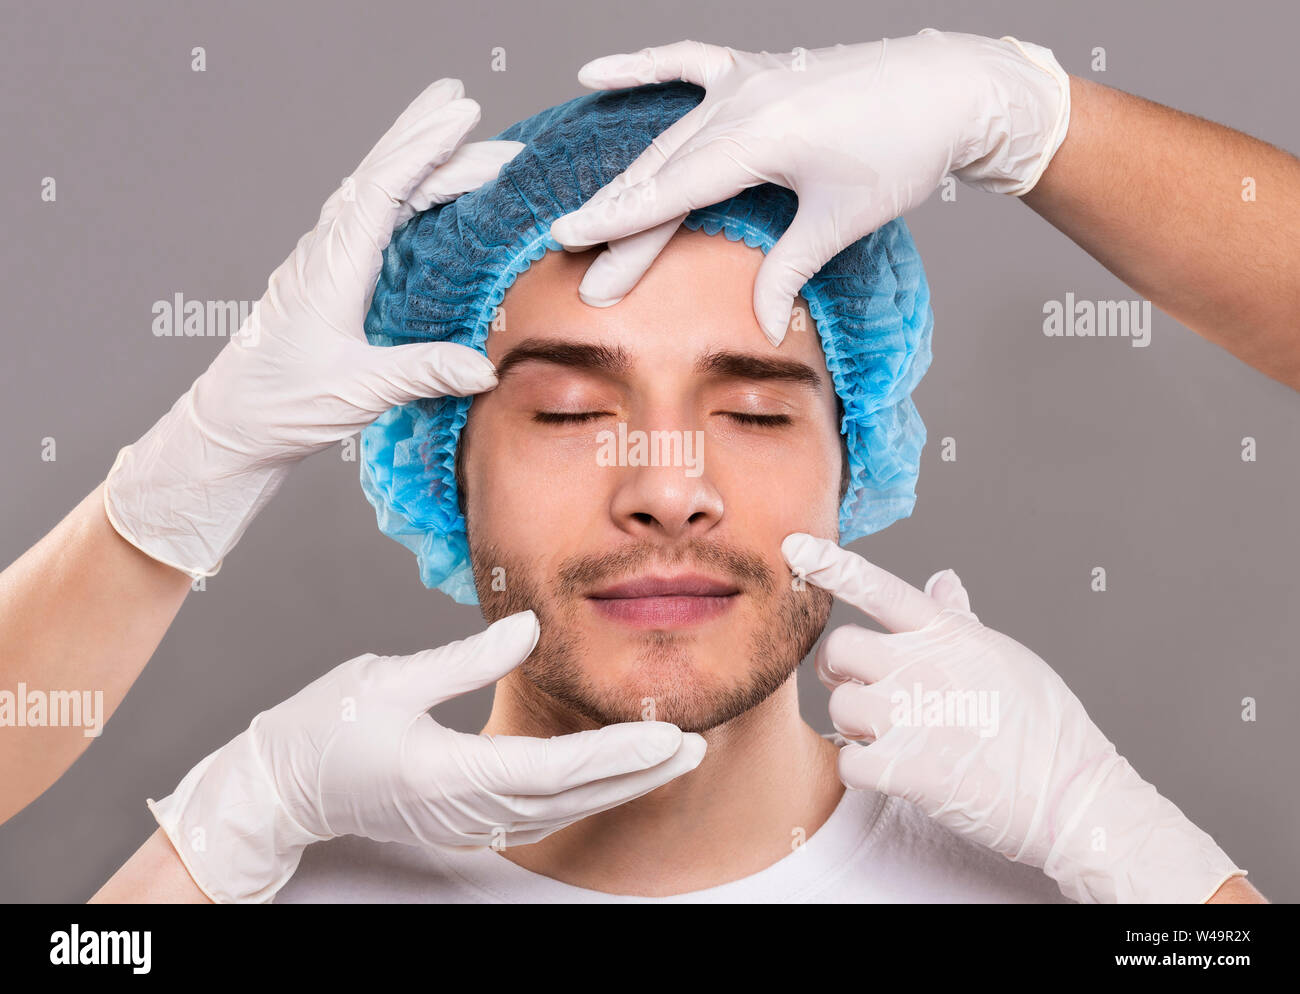 Dottore le mani in guanti controllo volto del giovane uomo Foto Stock